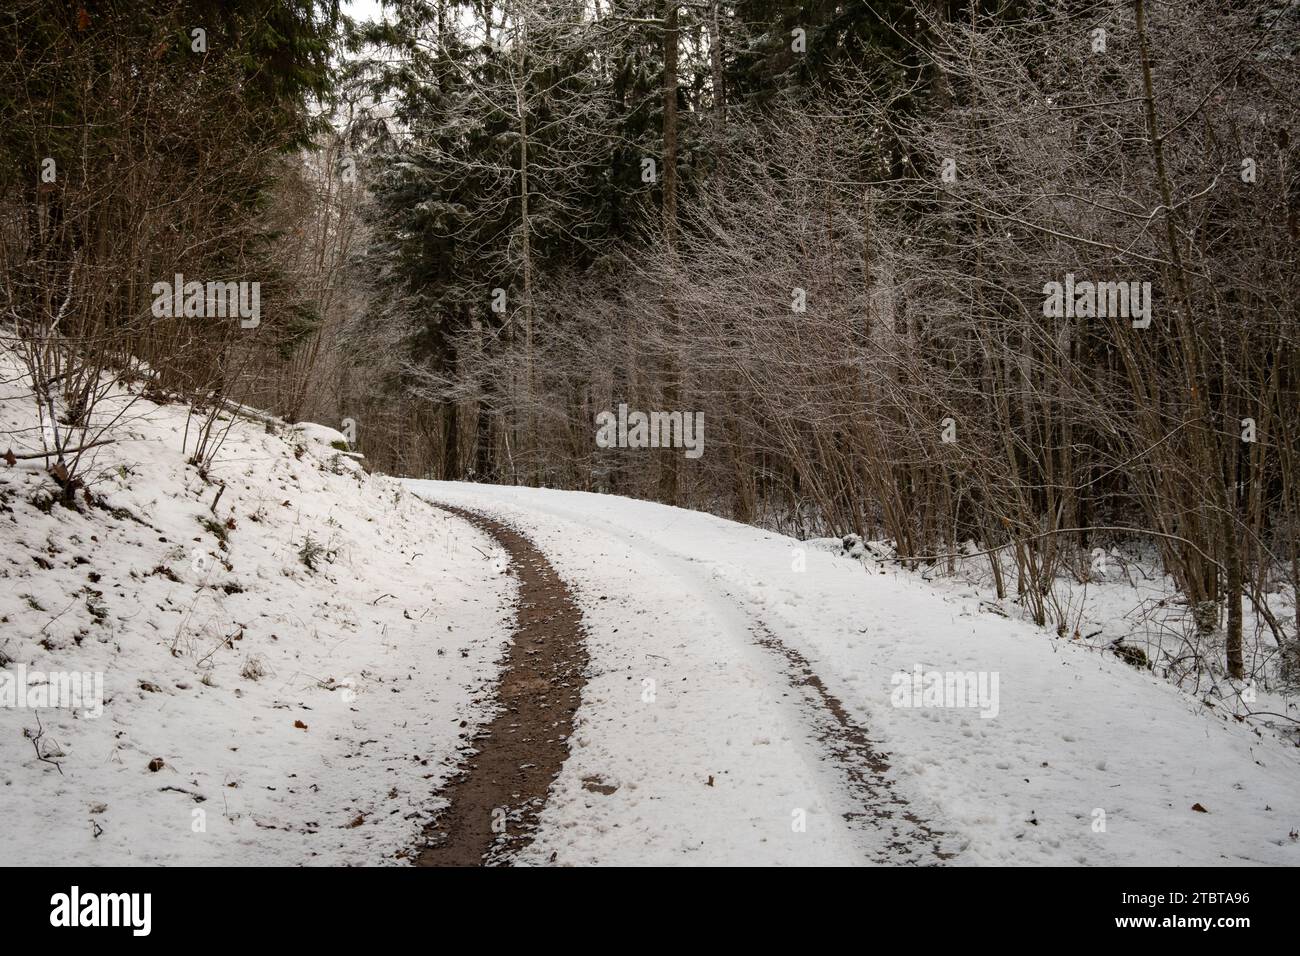 Il sentiero della foresta indossa le storie dei viaggi effettuati, ogni traccia di pneumatici sussurra il passaggio del viaggiatore attraverso boschi baciati dalla neve. Foto Stock